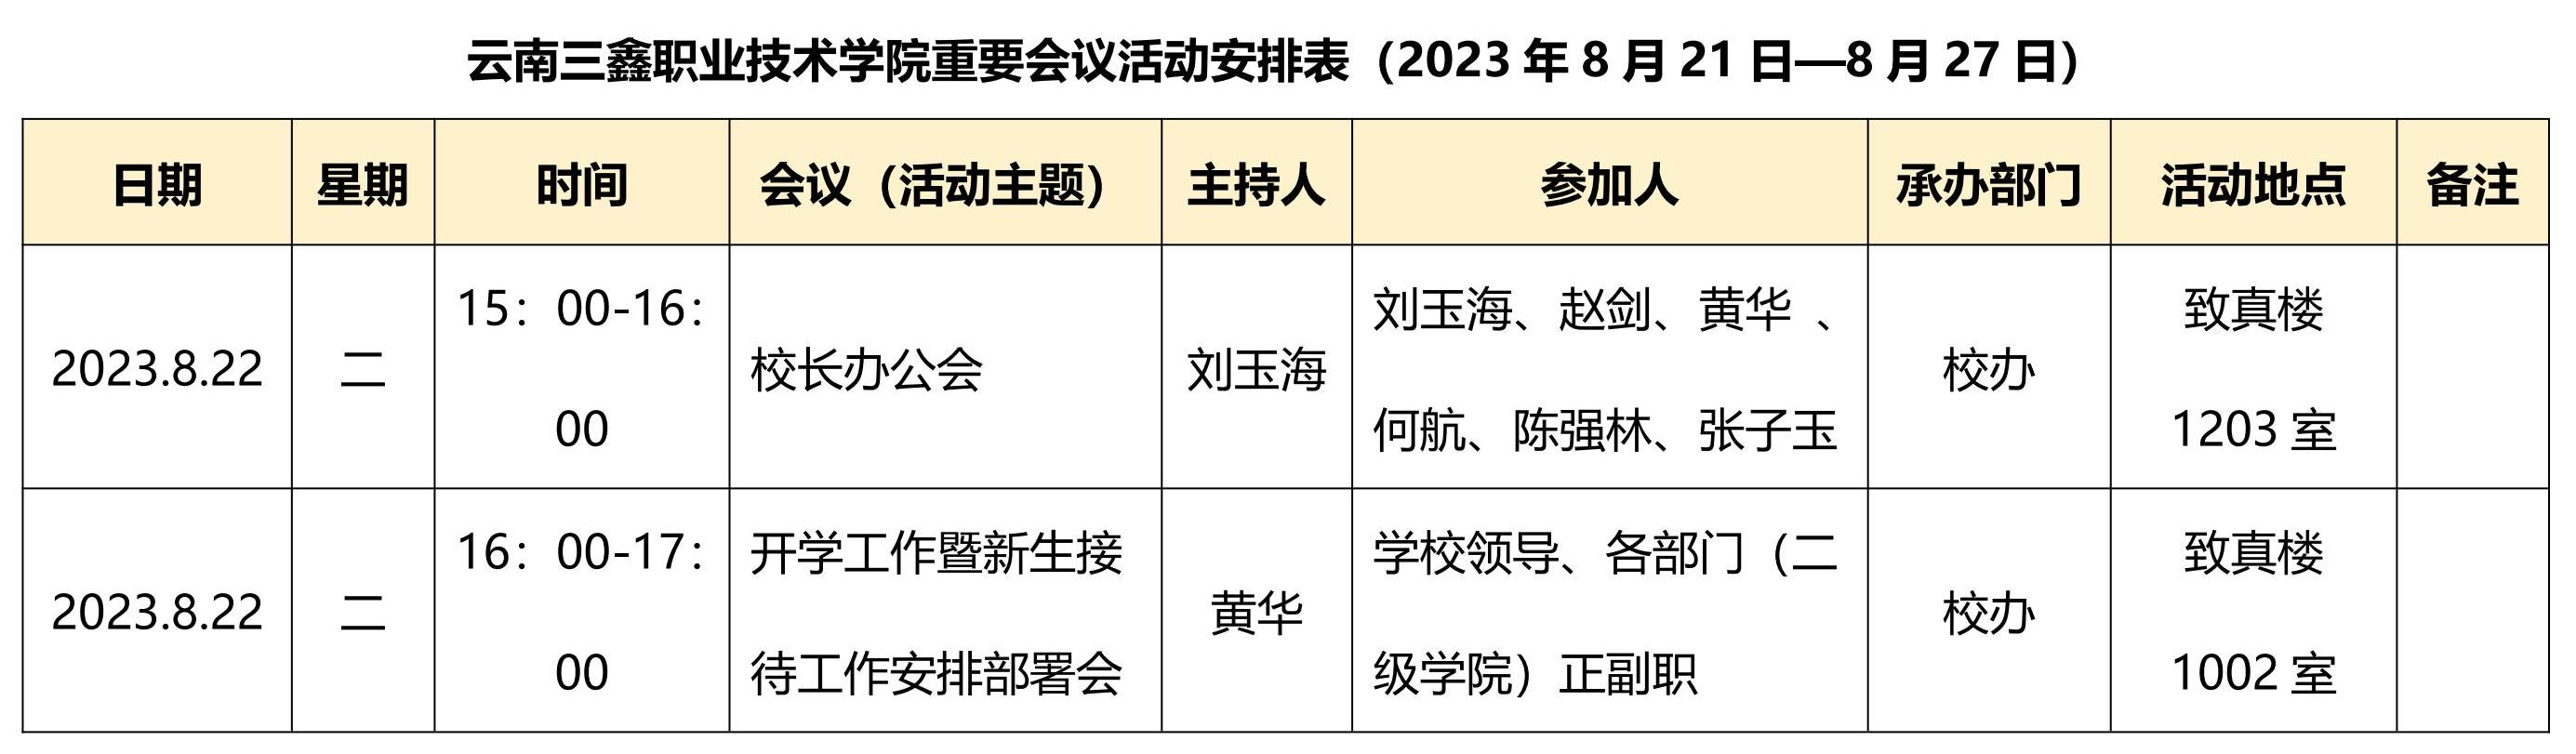 麻花痘精国品在线入口重要会议活动安排表（2023年8月21日—8月27日）